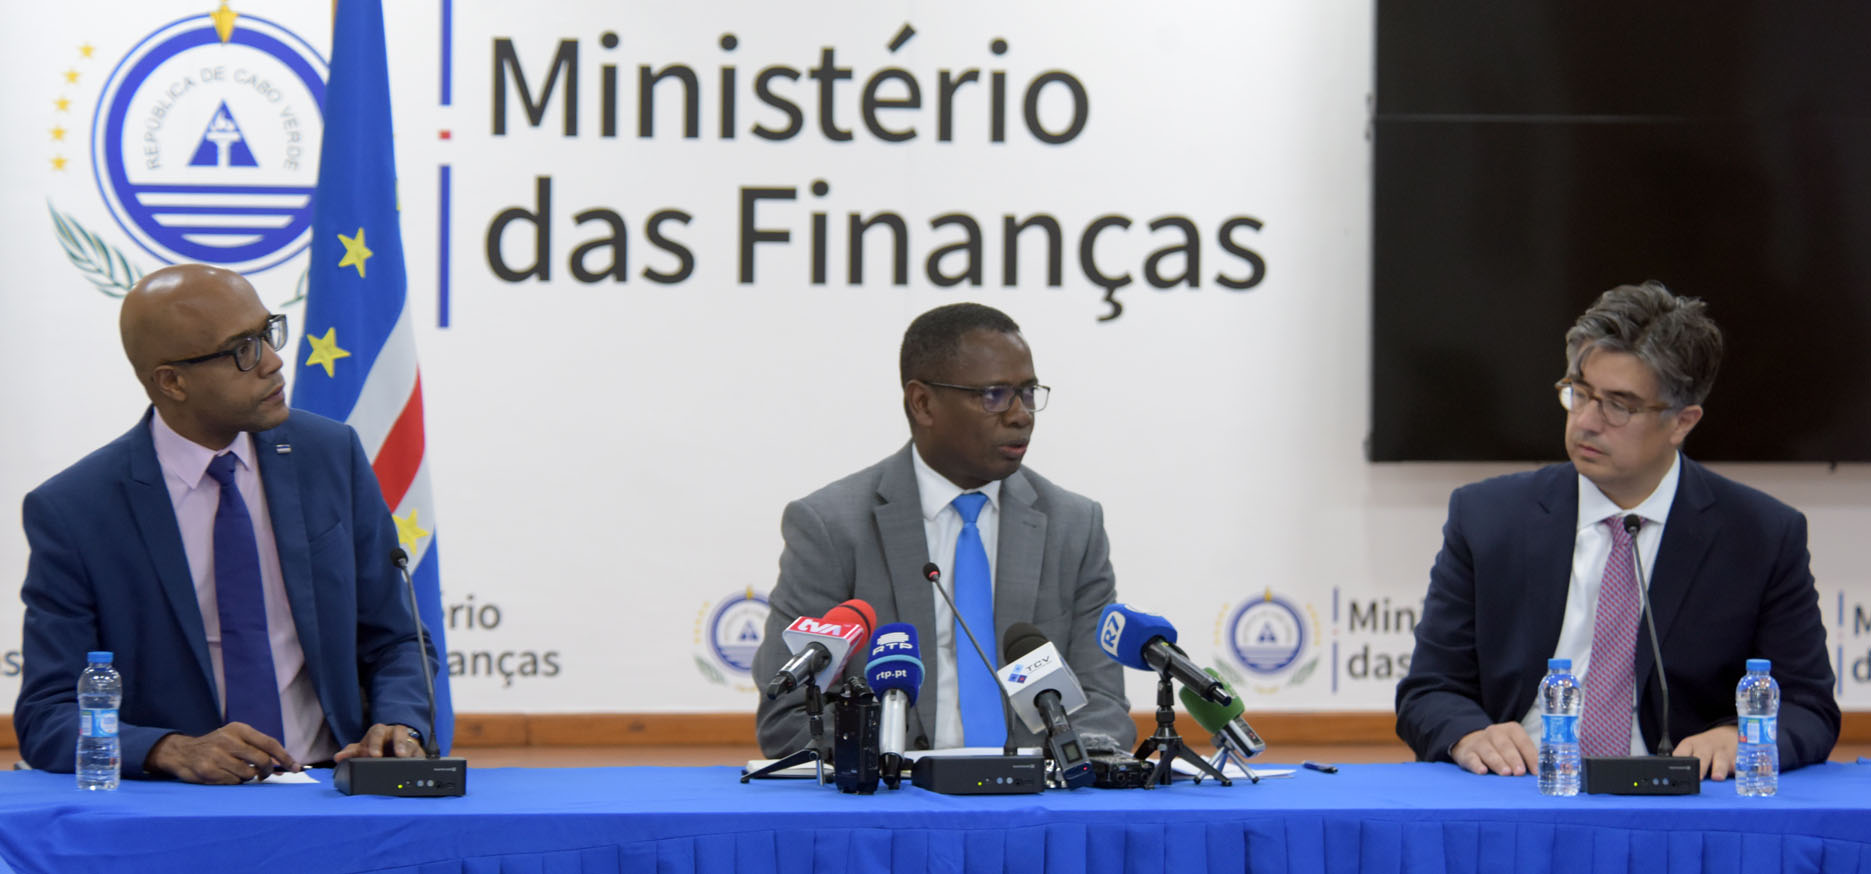 Inicio - Ministério das Finanças